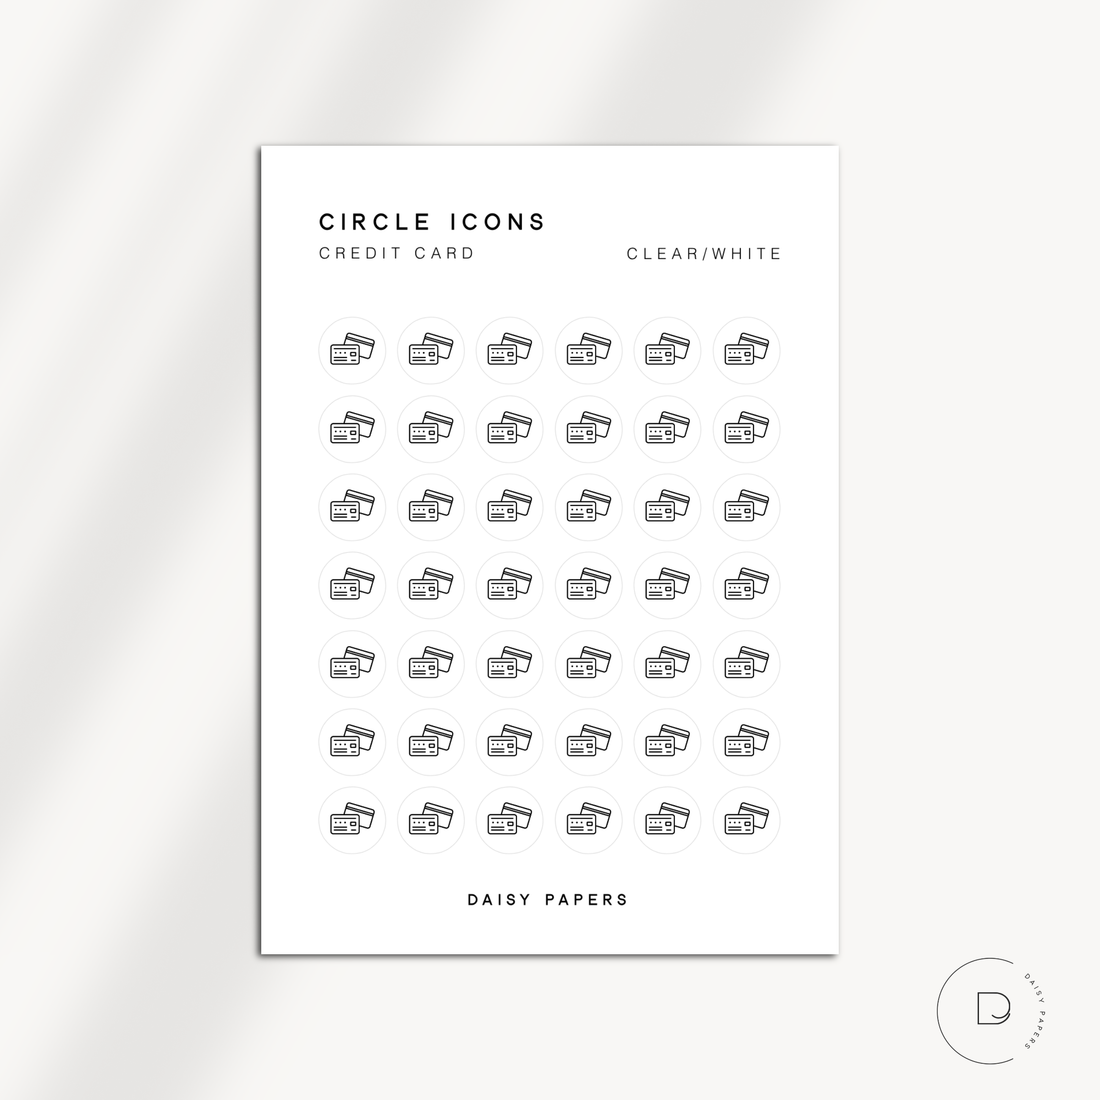 CIRCLE ICONS - CREDIT CARD